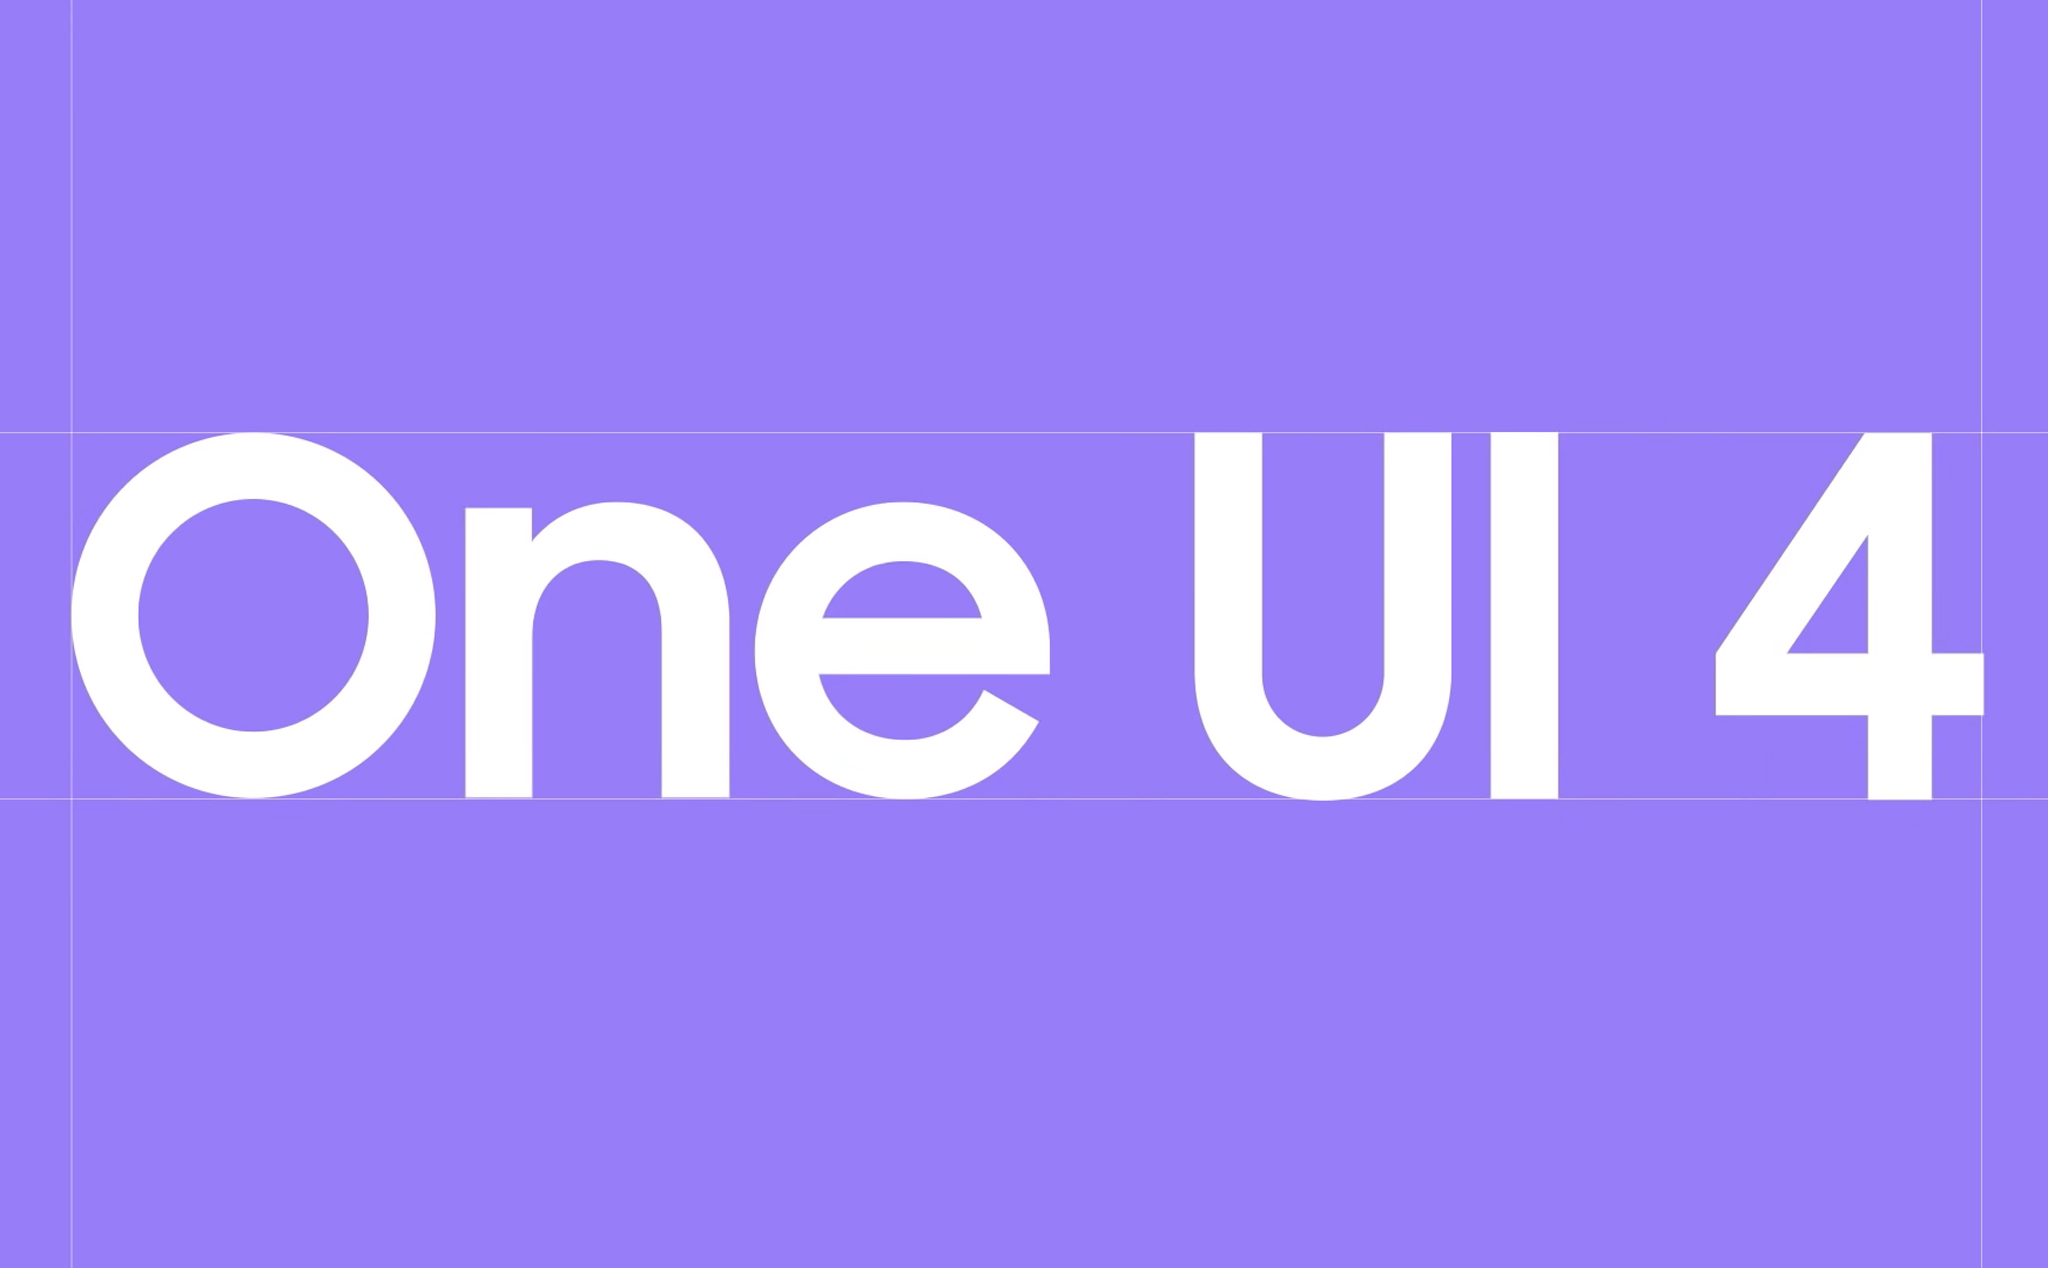 Samsung chính thức giới thiệu One UI 4 dựa trên Android 12